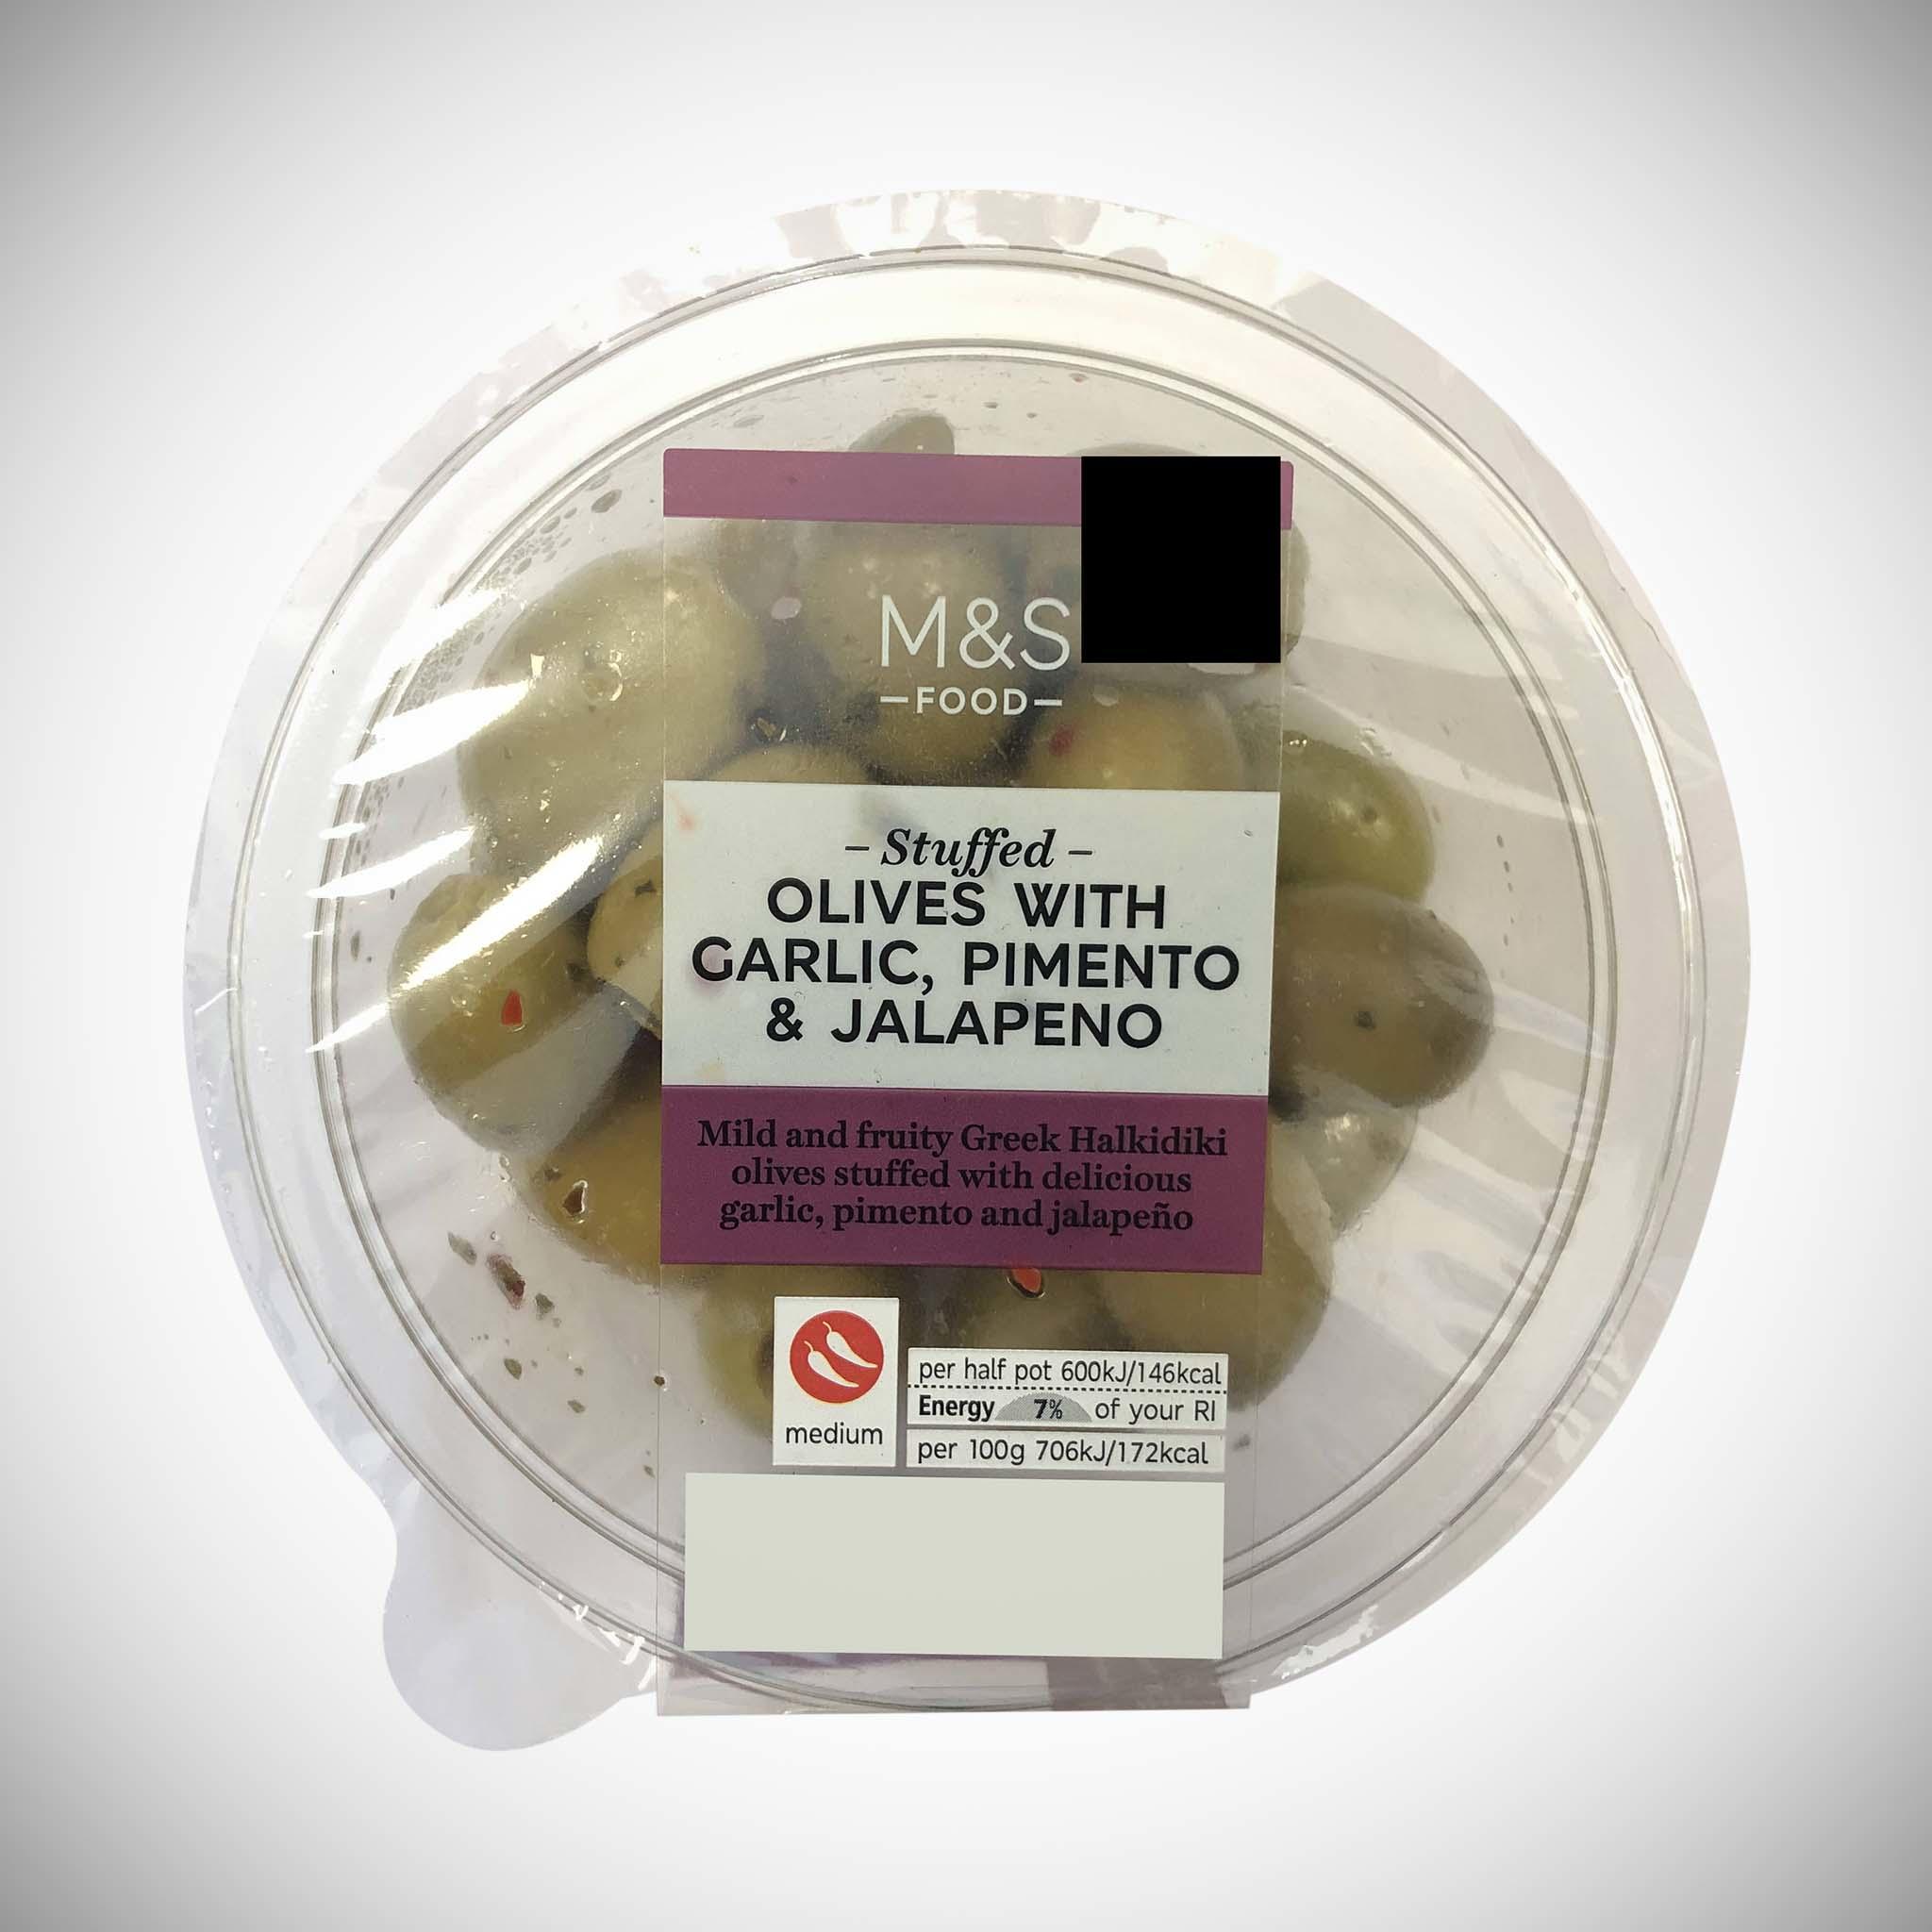 Garlic, Pimento & Jalapeno Stuffed Olives